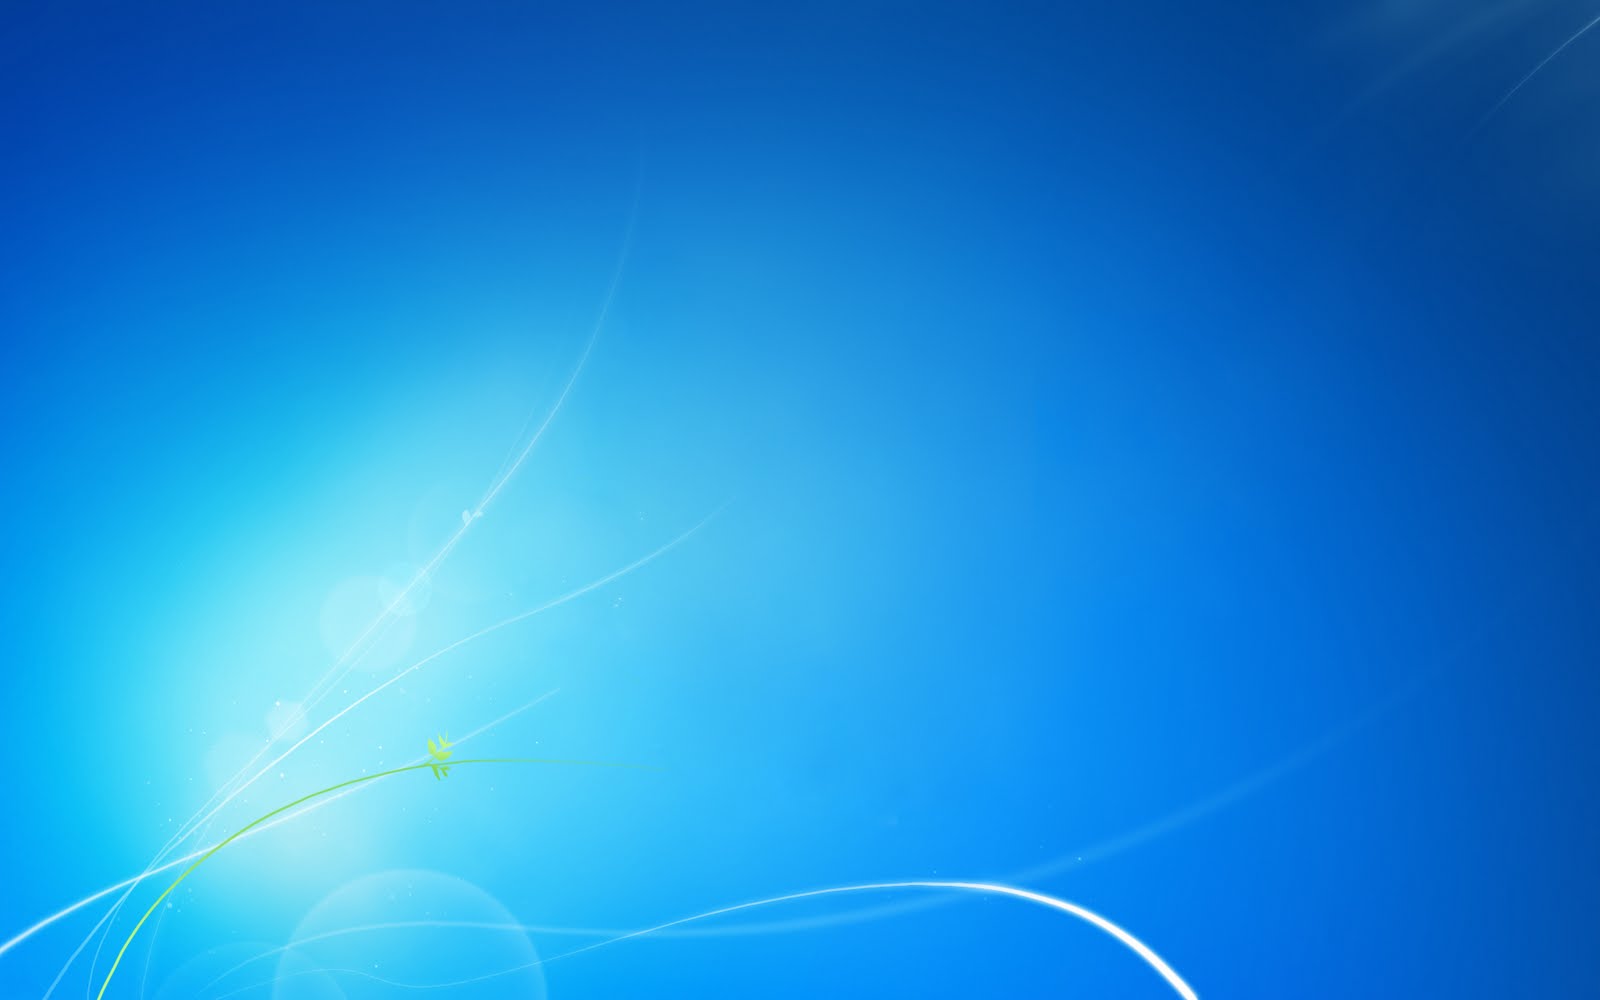 Không muốn chi trả cho hình nền đẹp và tiện lợi cho máy tính của bạn? Hãy tìm đến trang web Wallpapers Box và tải ngay hình nền Windows 7 No Logo Clean Blue HD hoàn toàn miễn phí. Với chất lượng hình ảnh đẹp và độ phân giải cao, bộ sưu tập này sẽ khiến cho máy tính của bạn thêm phần sinh động và ấn tượng hơn.